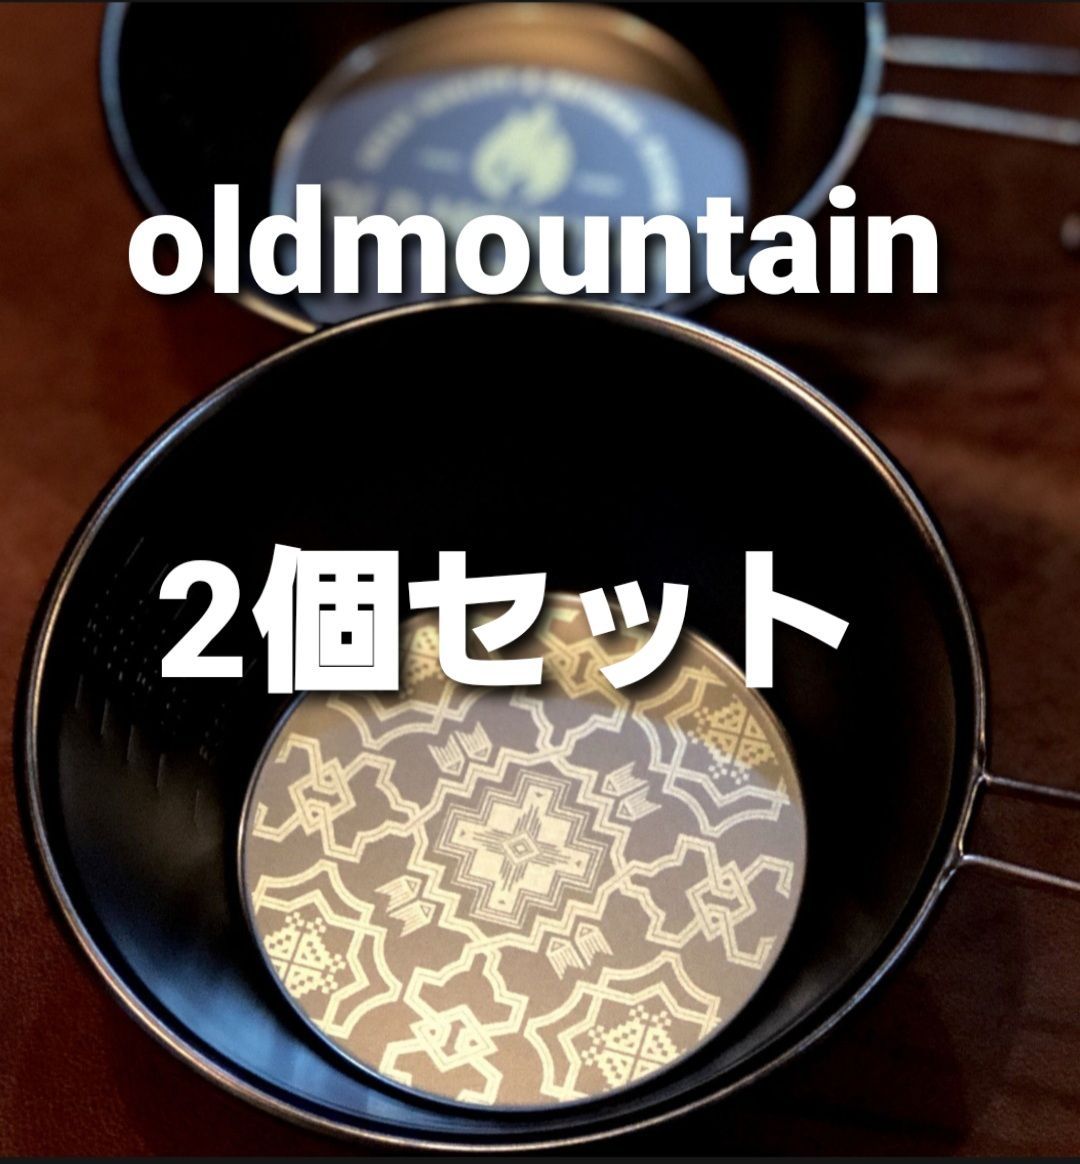 OLD MOUNTAIN ブラックシェラカップ somabito - iTribute - メルカリ